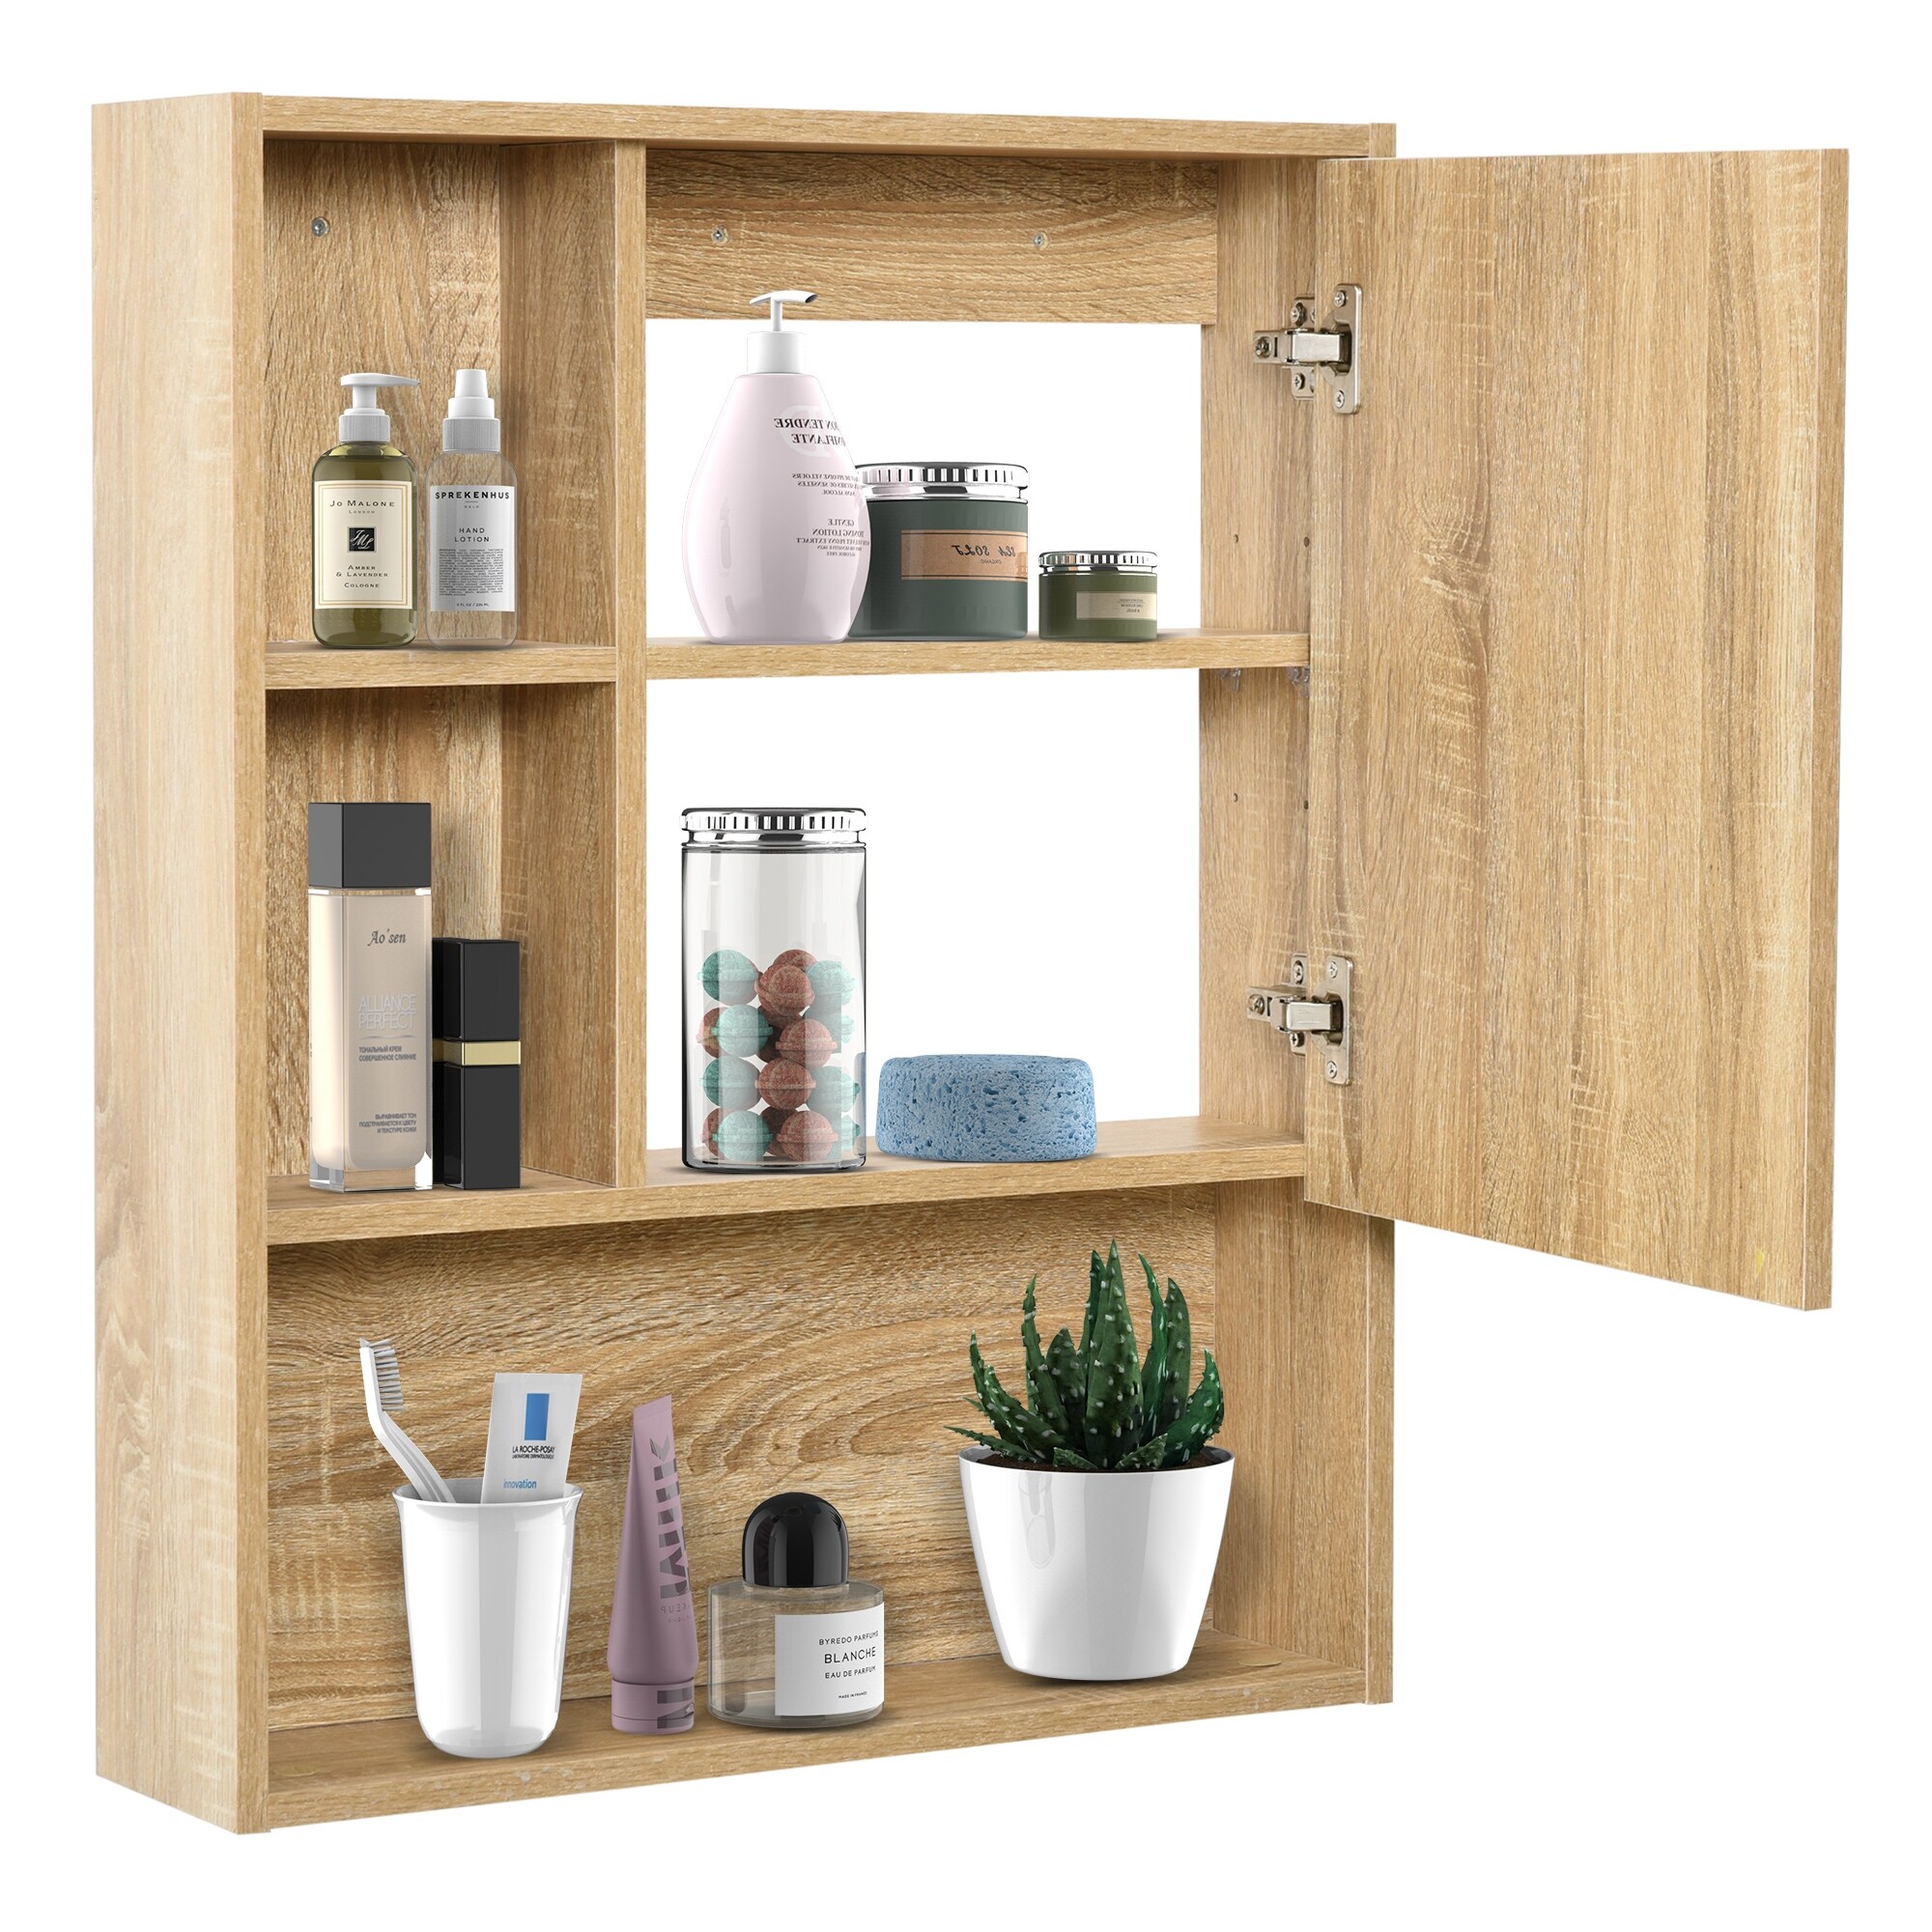 https://ak1.ostkcdn.com/images/products/is/images/direct/c6e7343fa4728b6d0028a61d8a7de161f32cbfa3/kleankin-Wall-Mounted-Wooden-Storage-Bathroom-Medicine-Cabinet-with-Mirror-Glass-Door-Adjustable-Open-Shelf-Oak-Grain.jpg